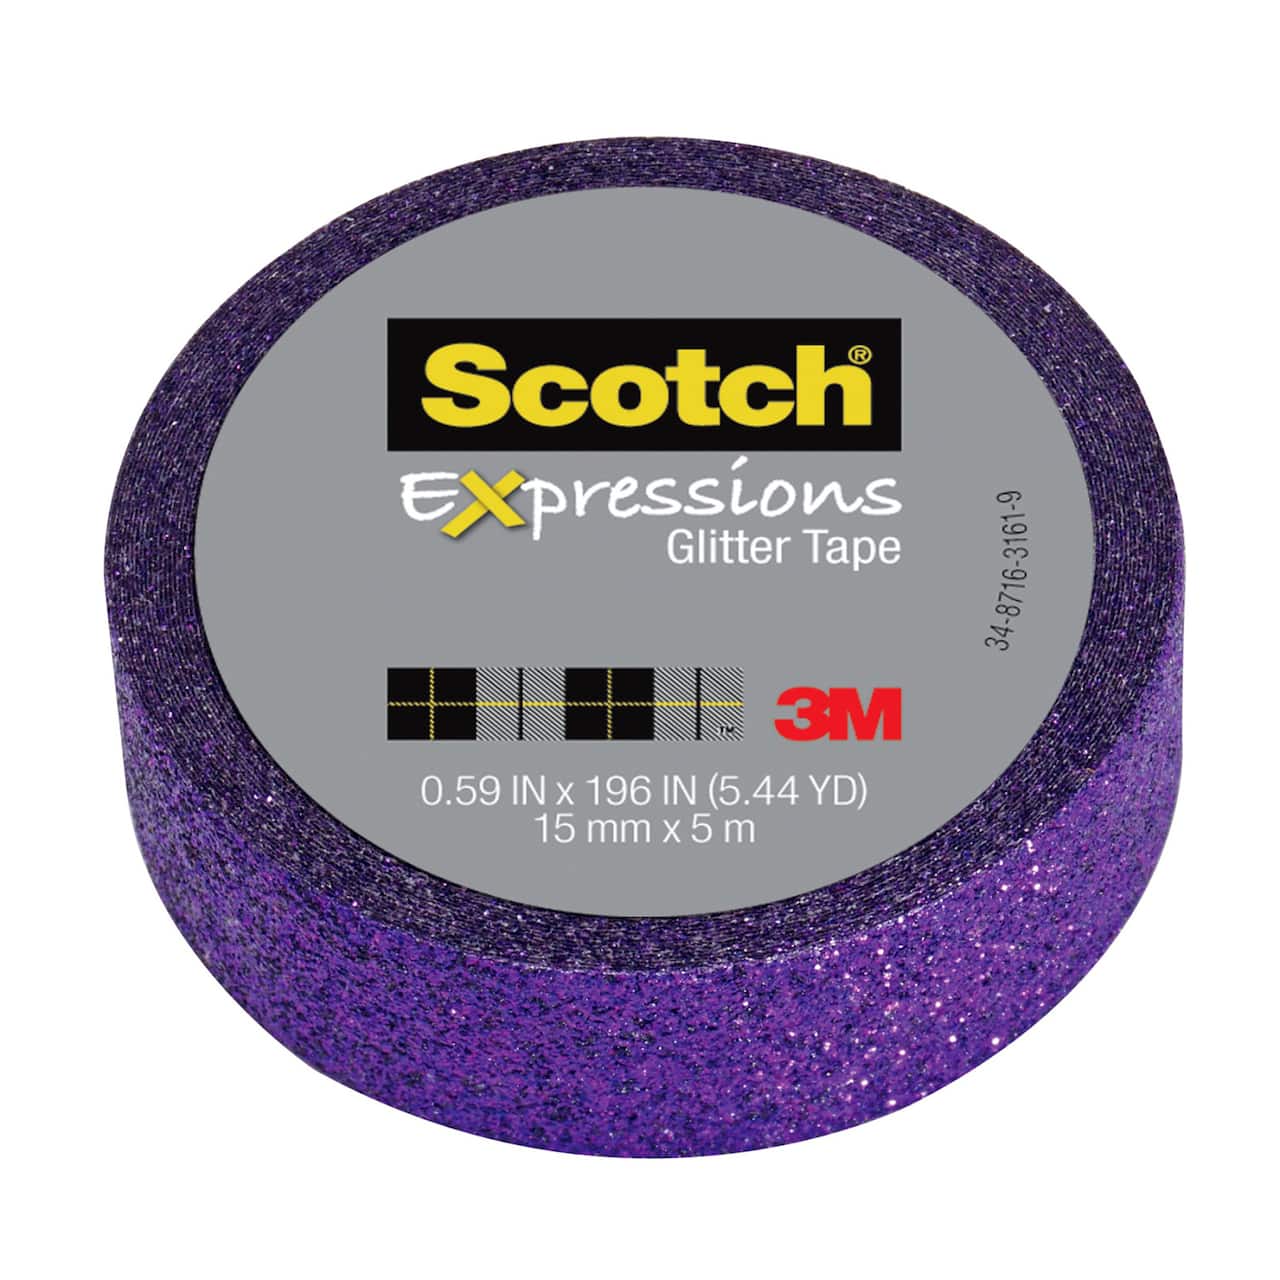 12 Pack: 3M Scotch&#xAE; Expressions Glitter Tape